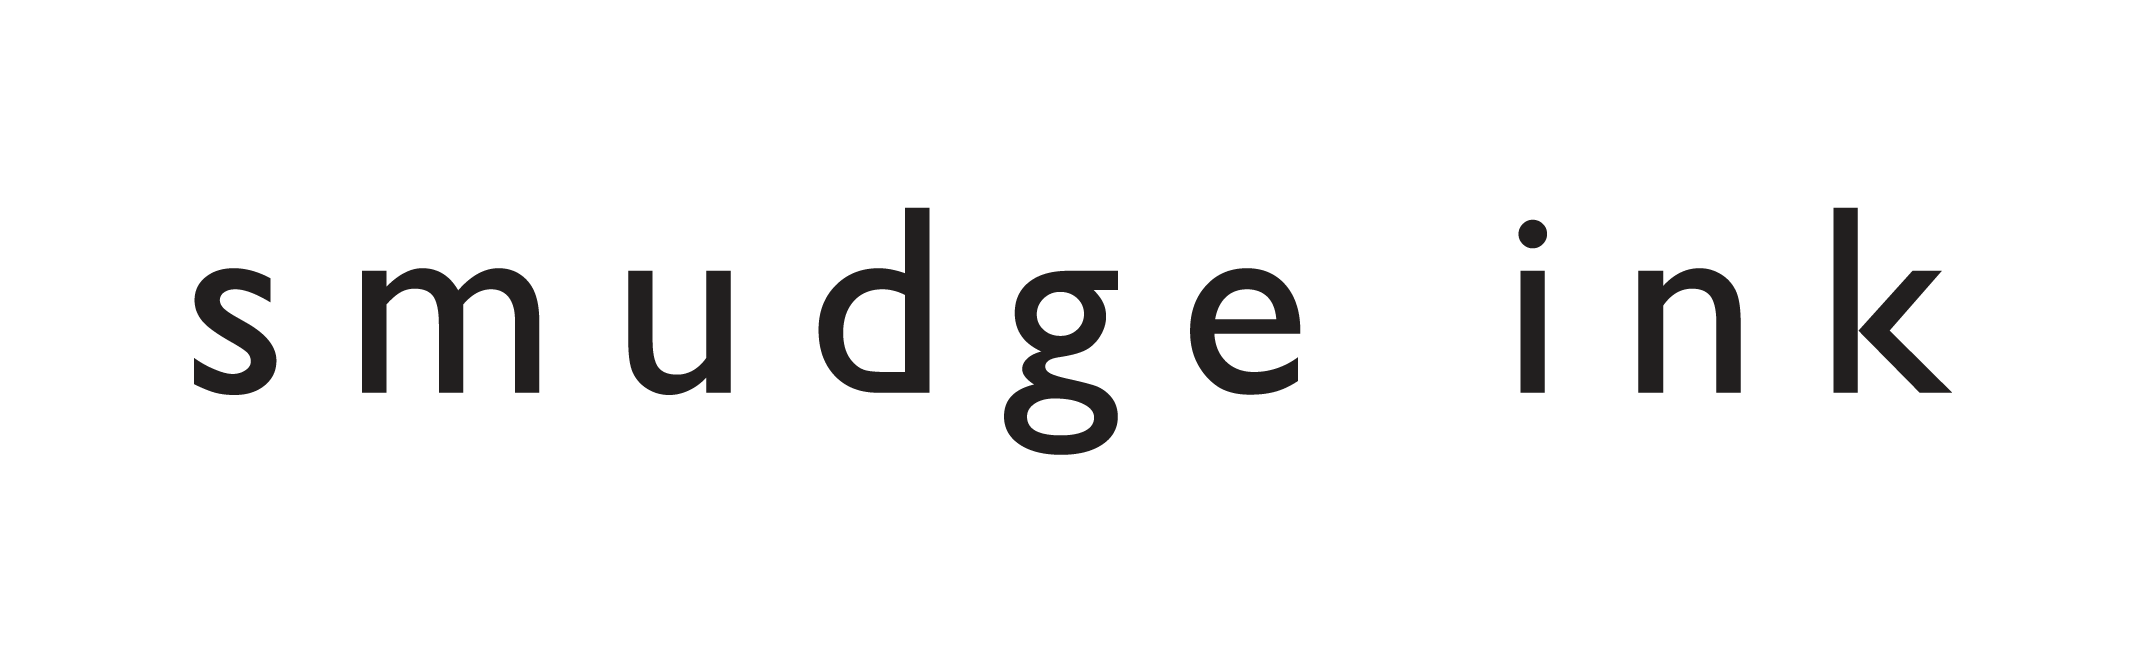 Smudge Ink logo